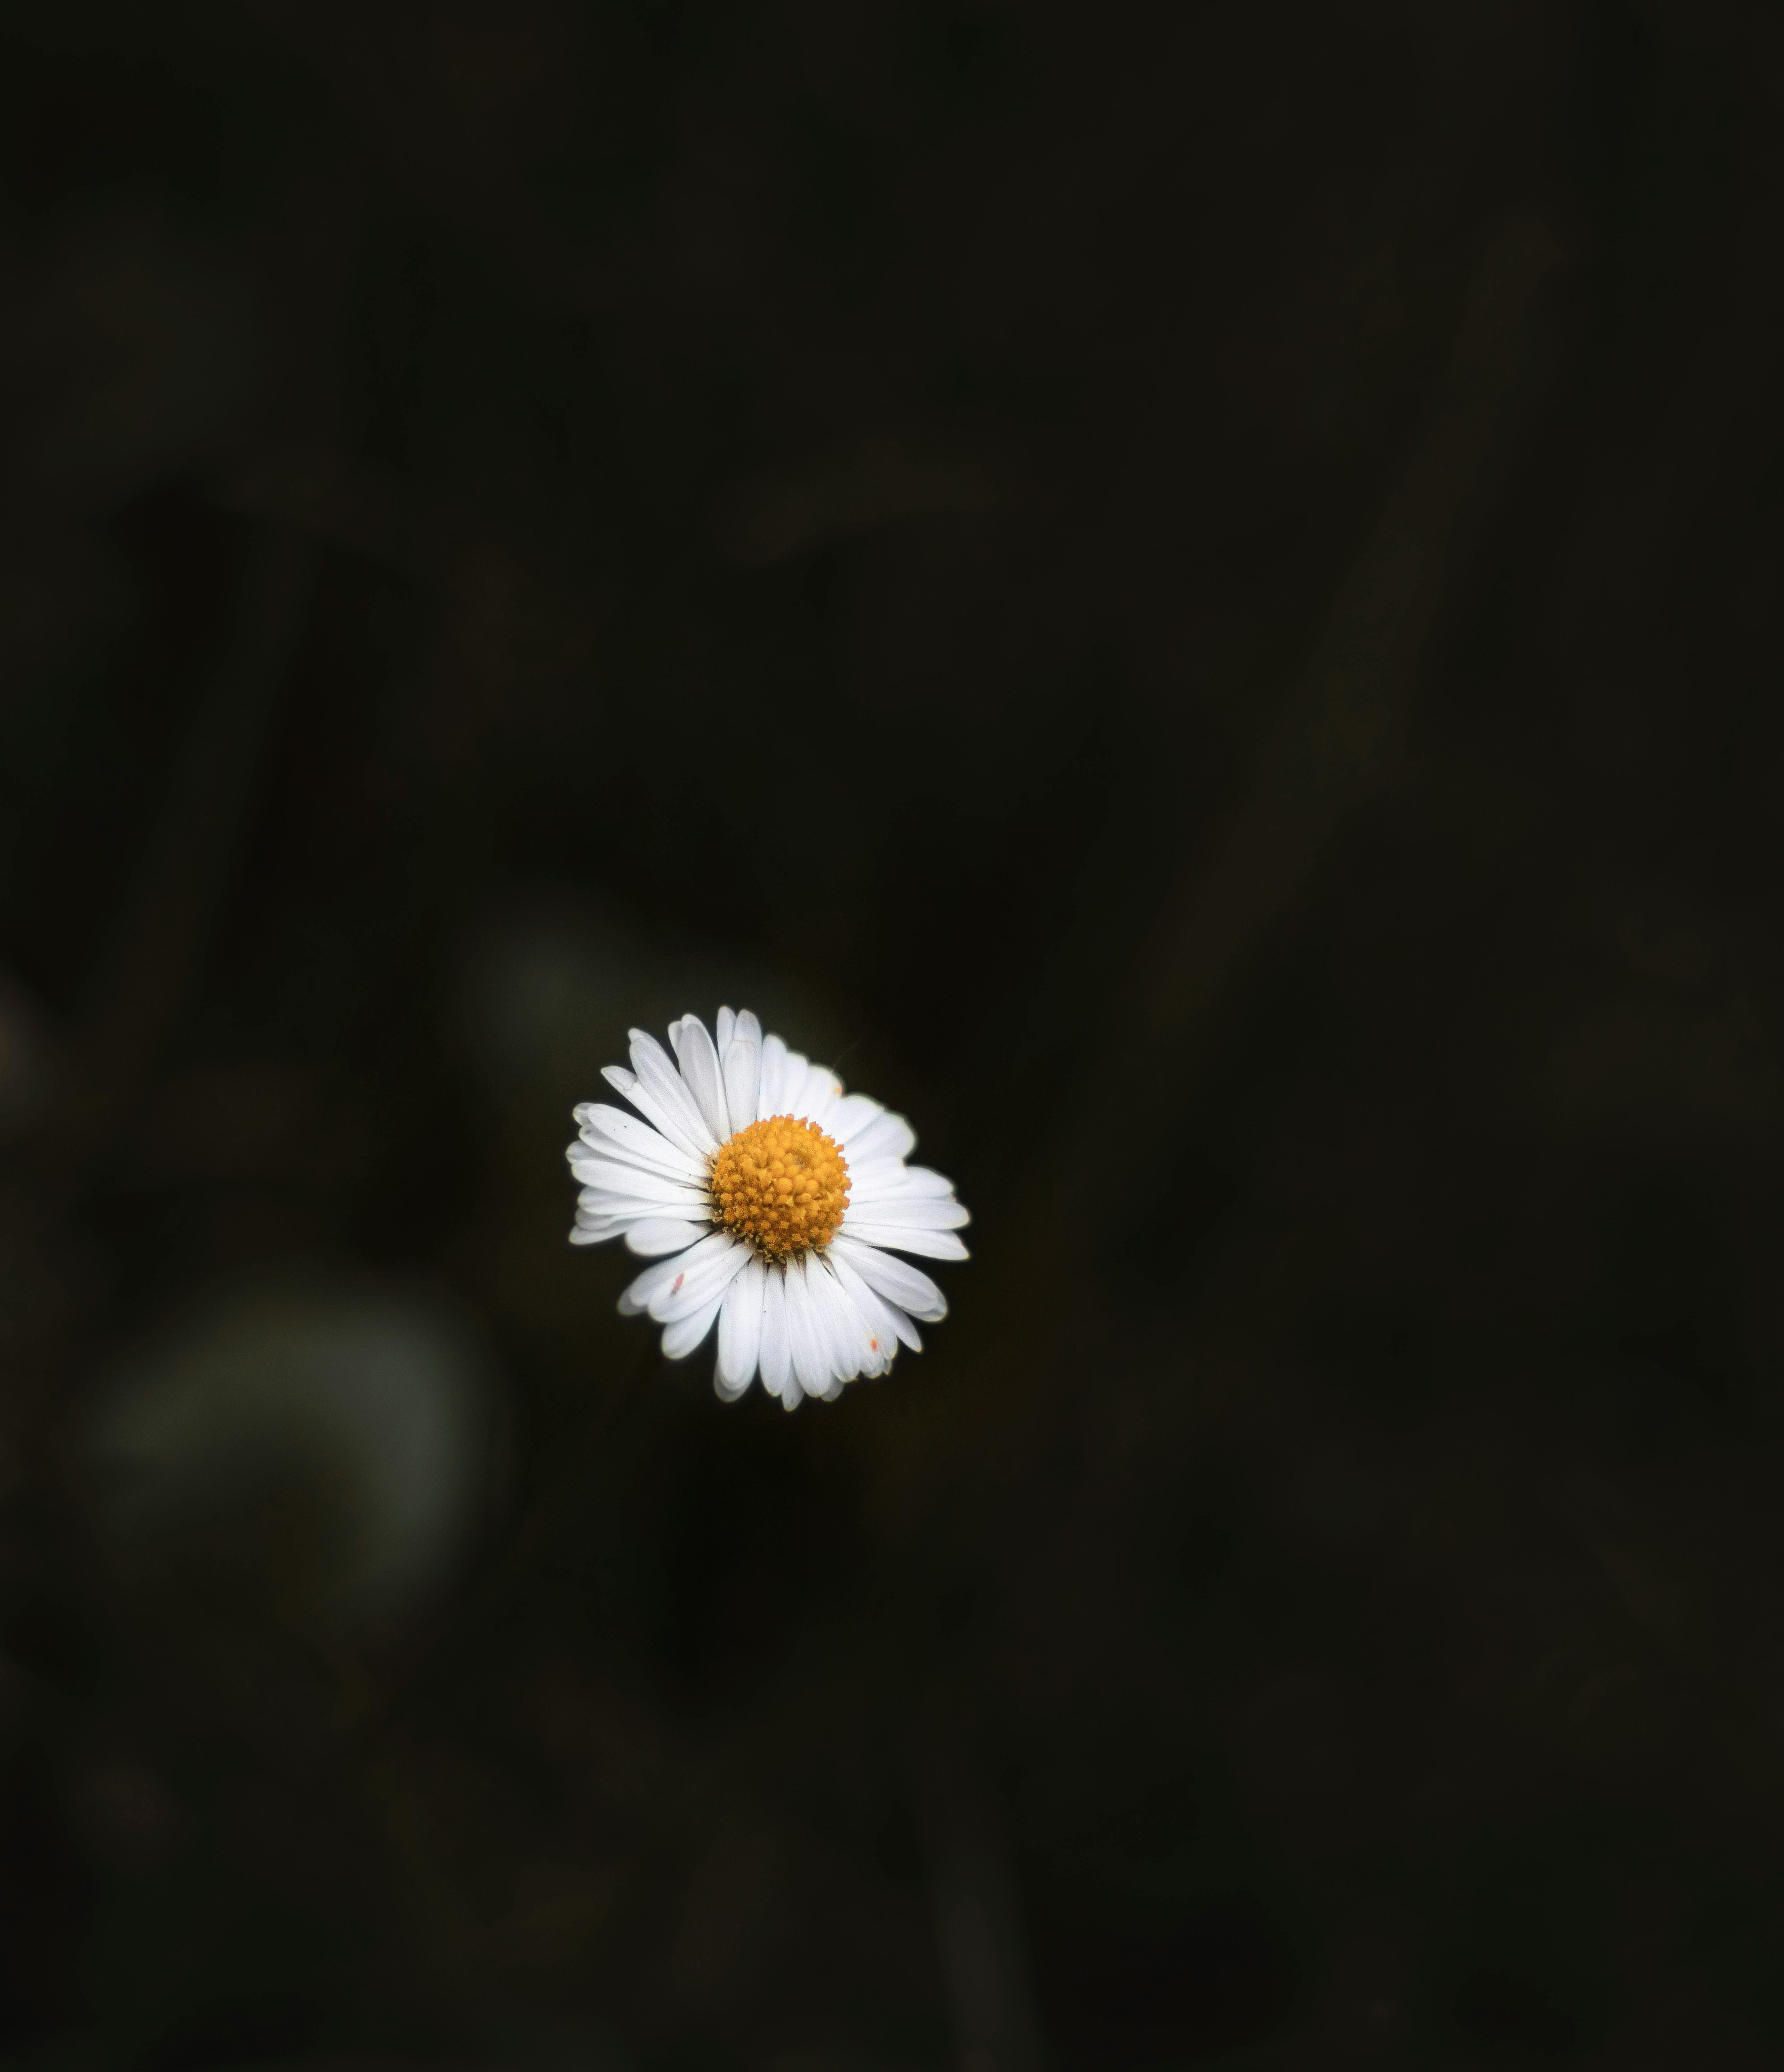 daisy background